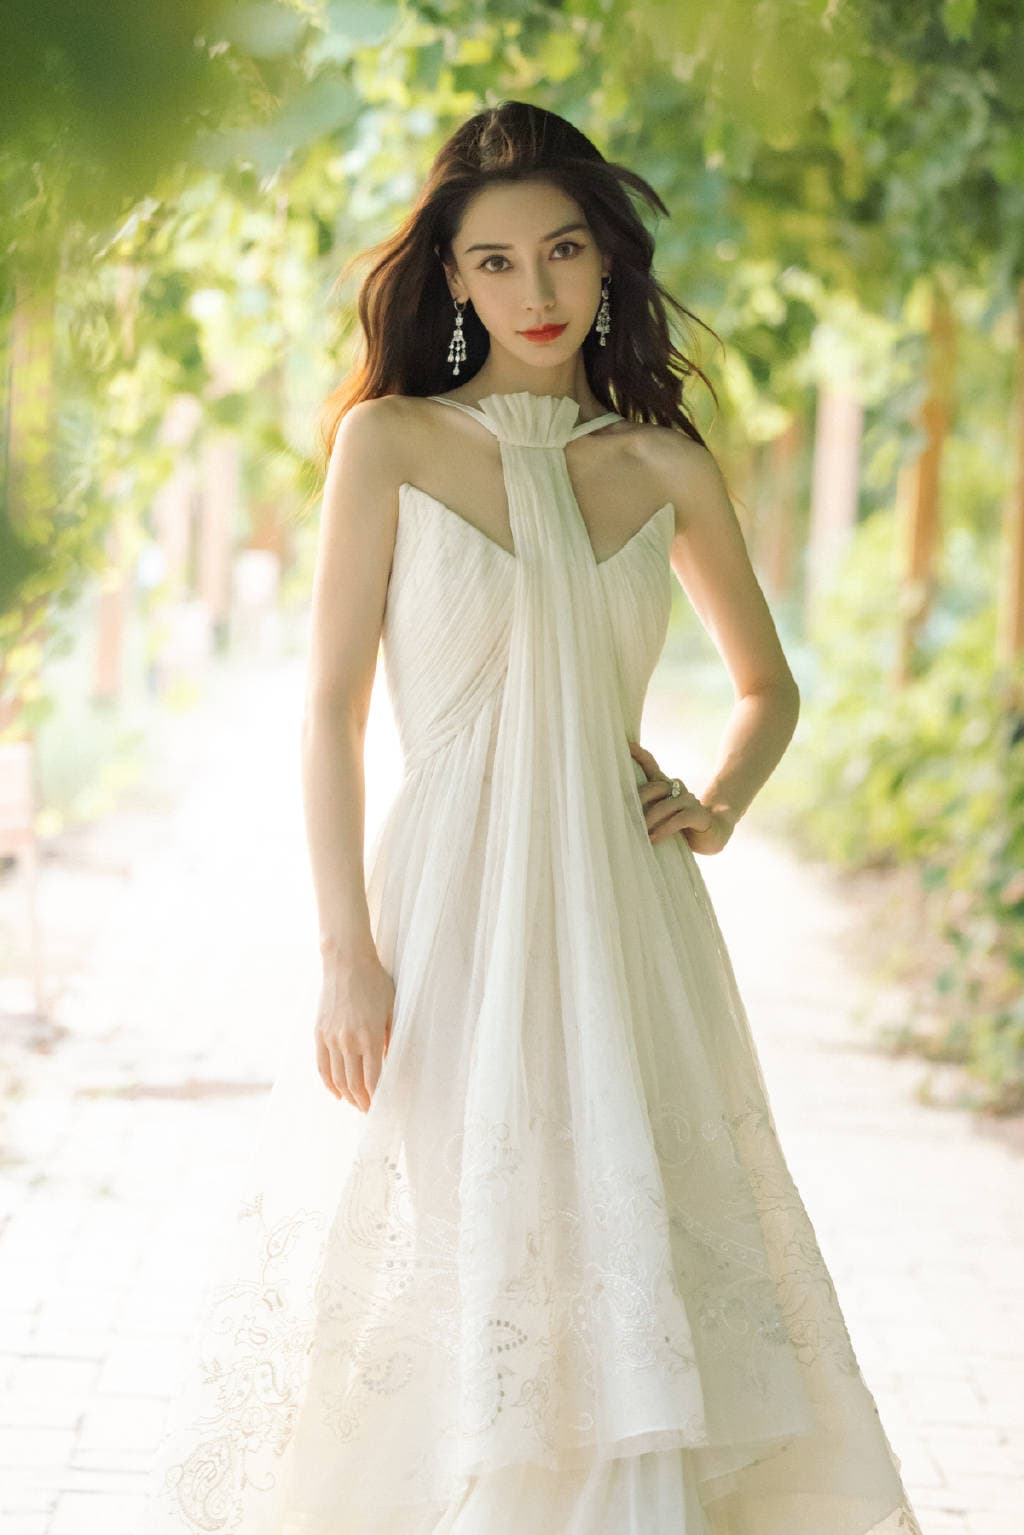 Váy cưới của mỹ nhân Hoa ngữ: Lưu Thi Thi - Angela Baby đắt đỏ, Đường Yên  tinh tế từng chi tiết